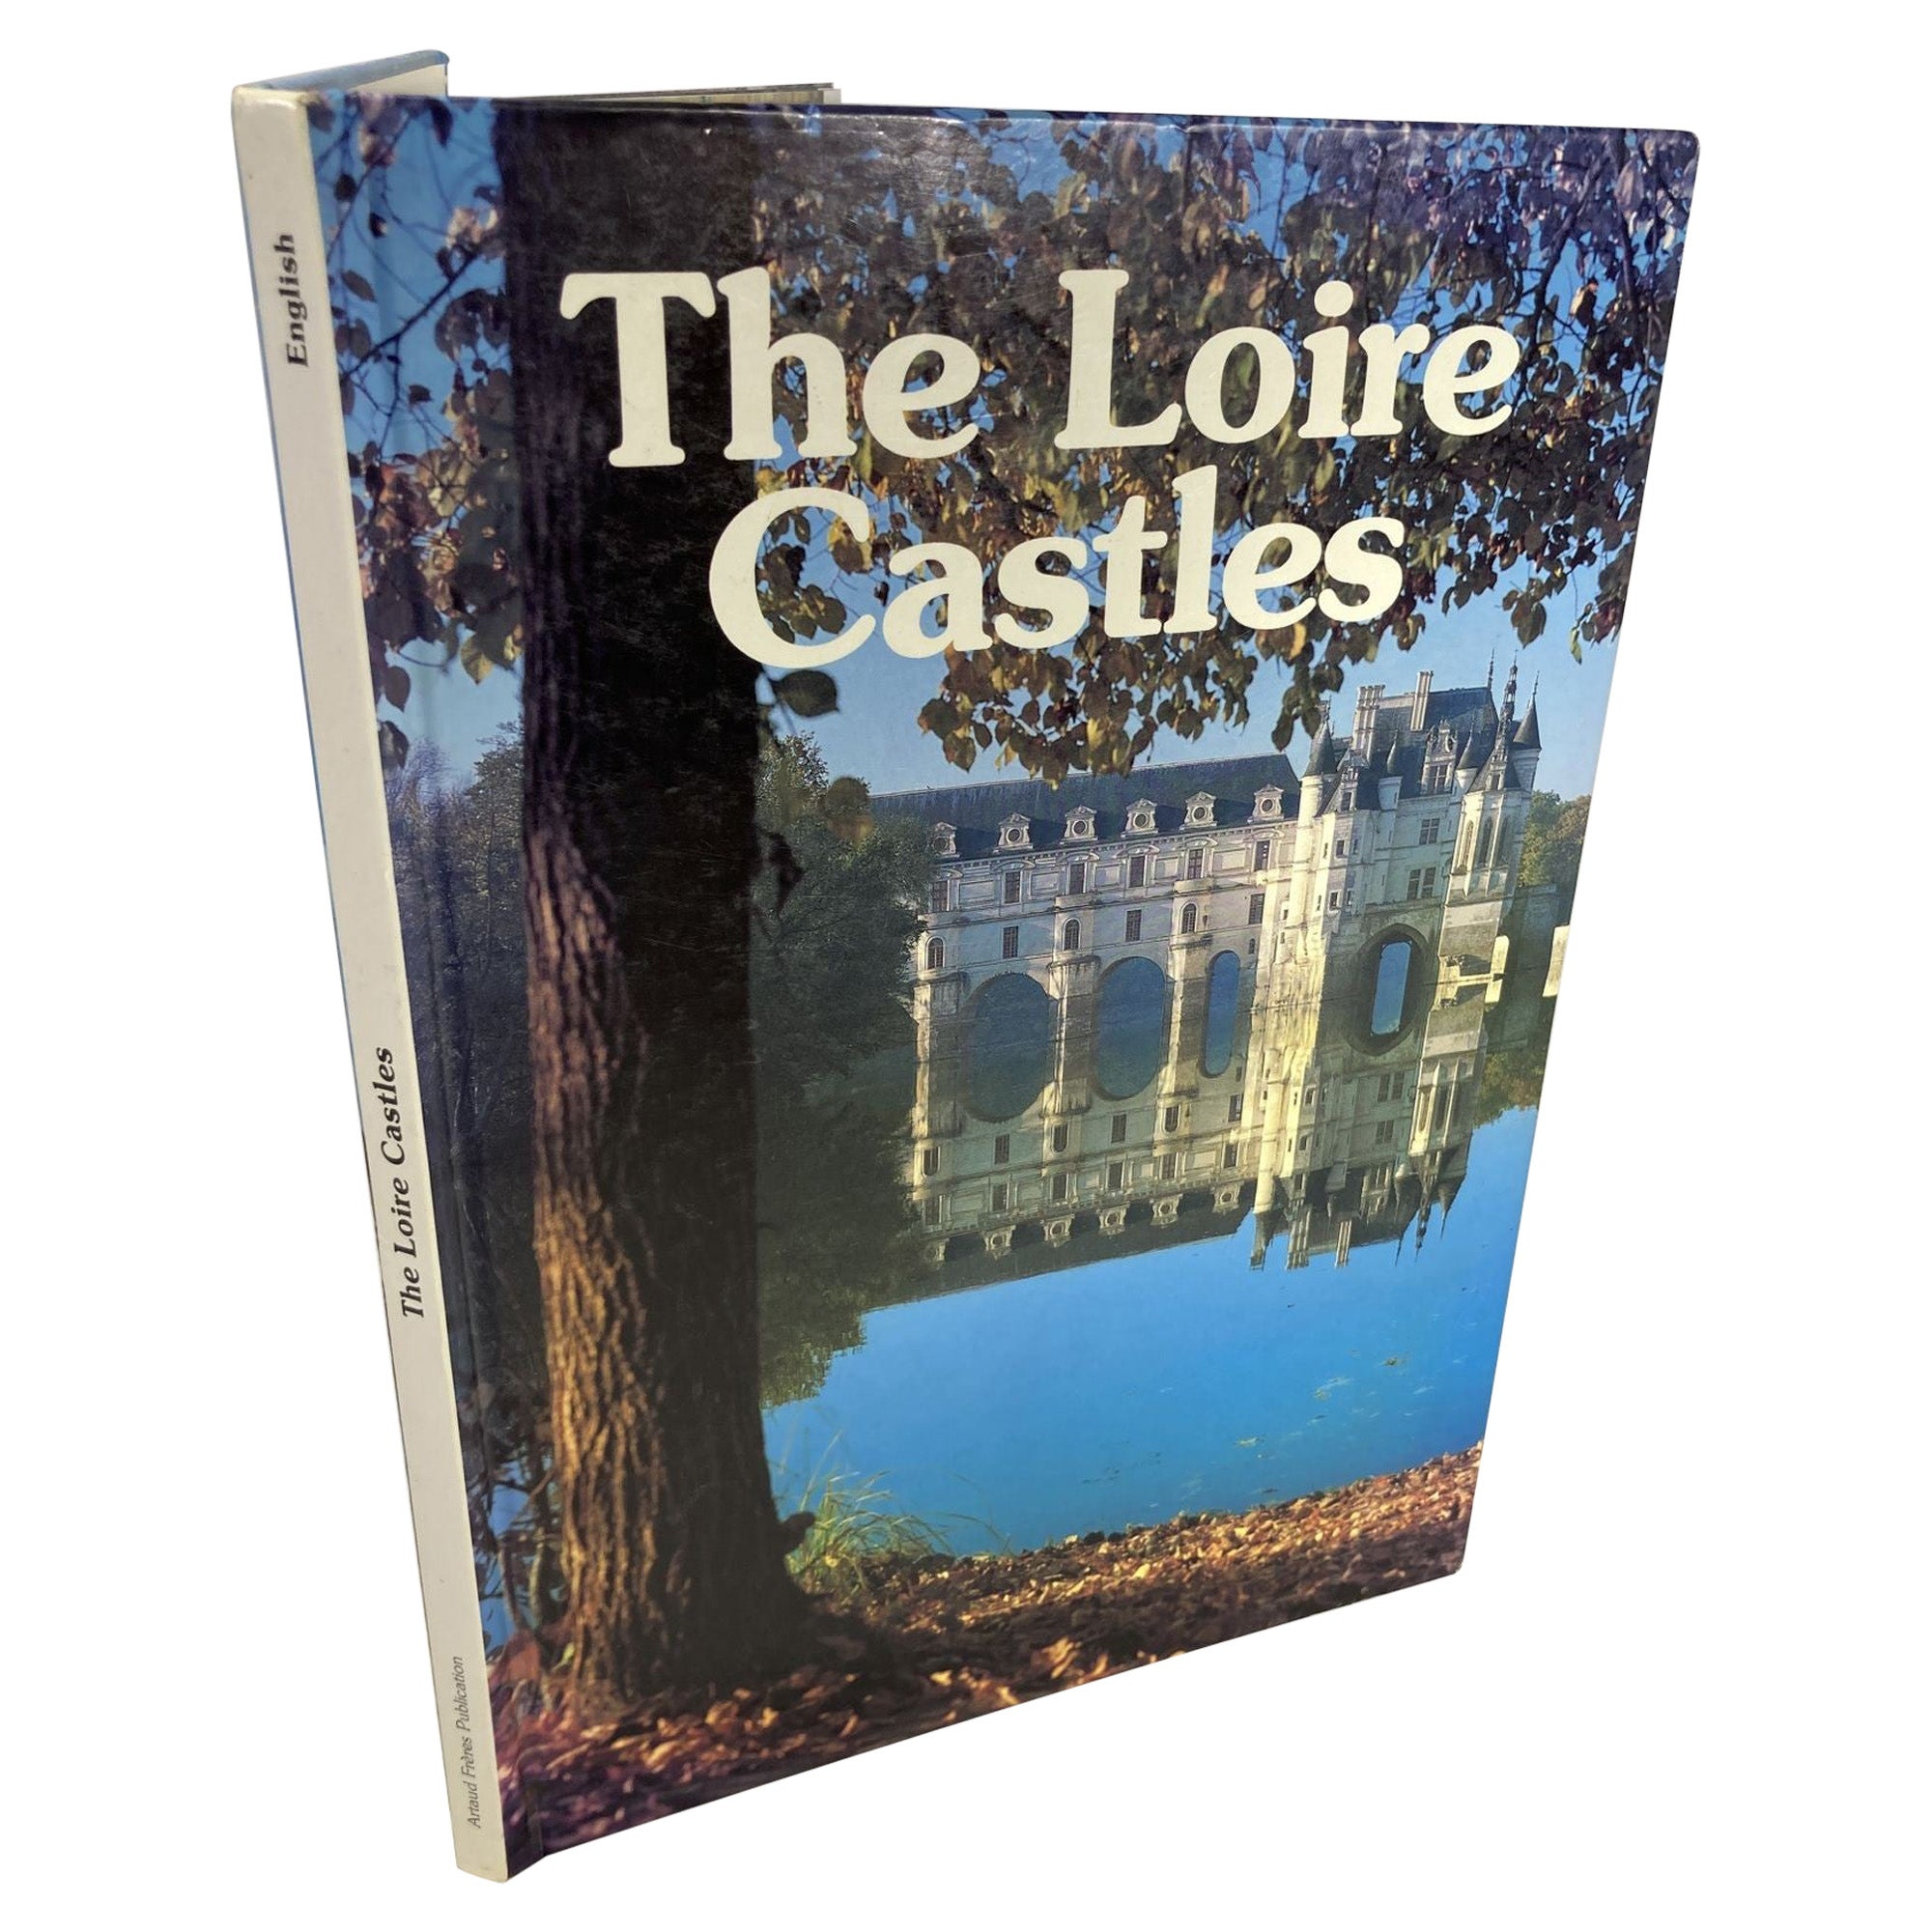 Loire Castles Artaud Freres Publication Hardcover Book by Armel De Wismes For Sale